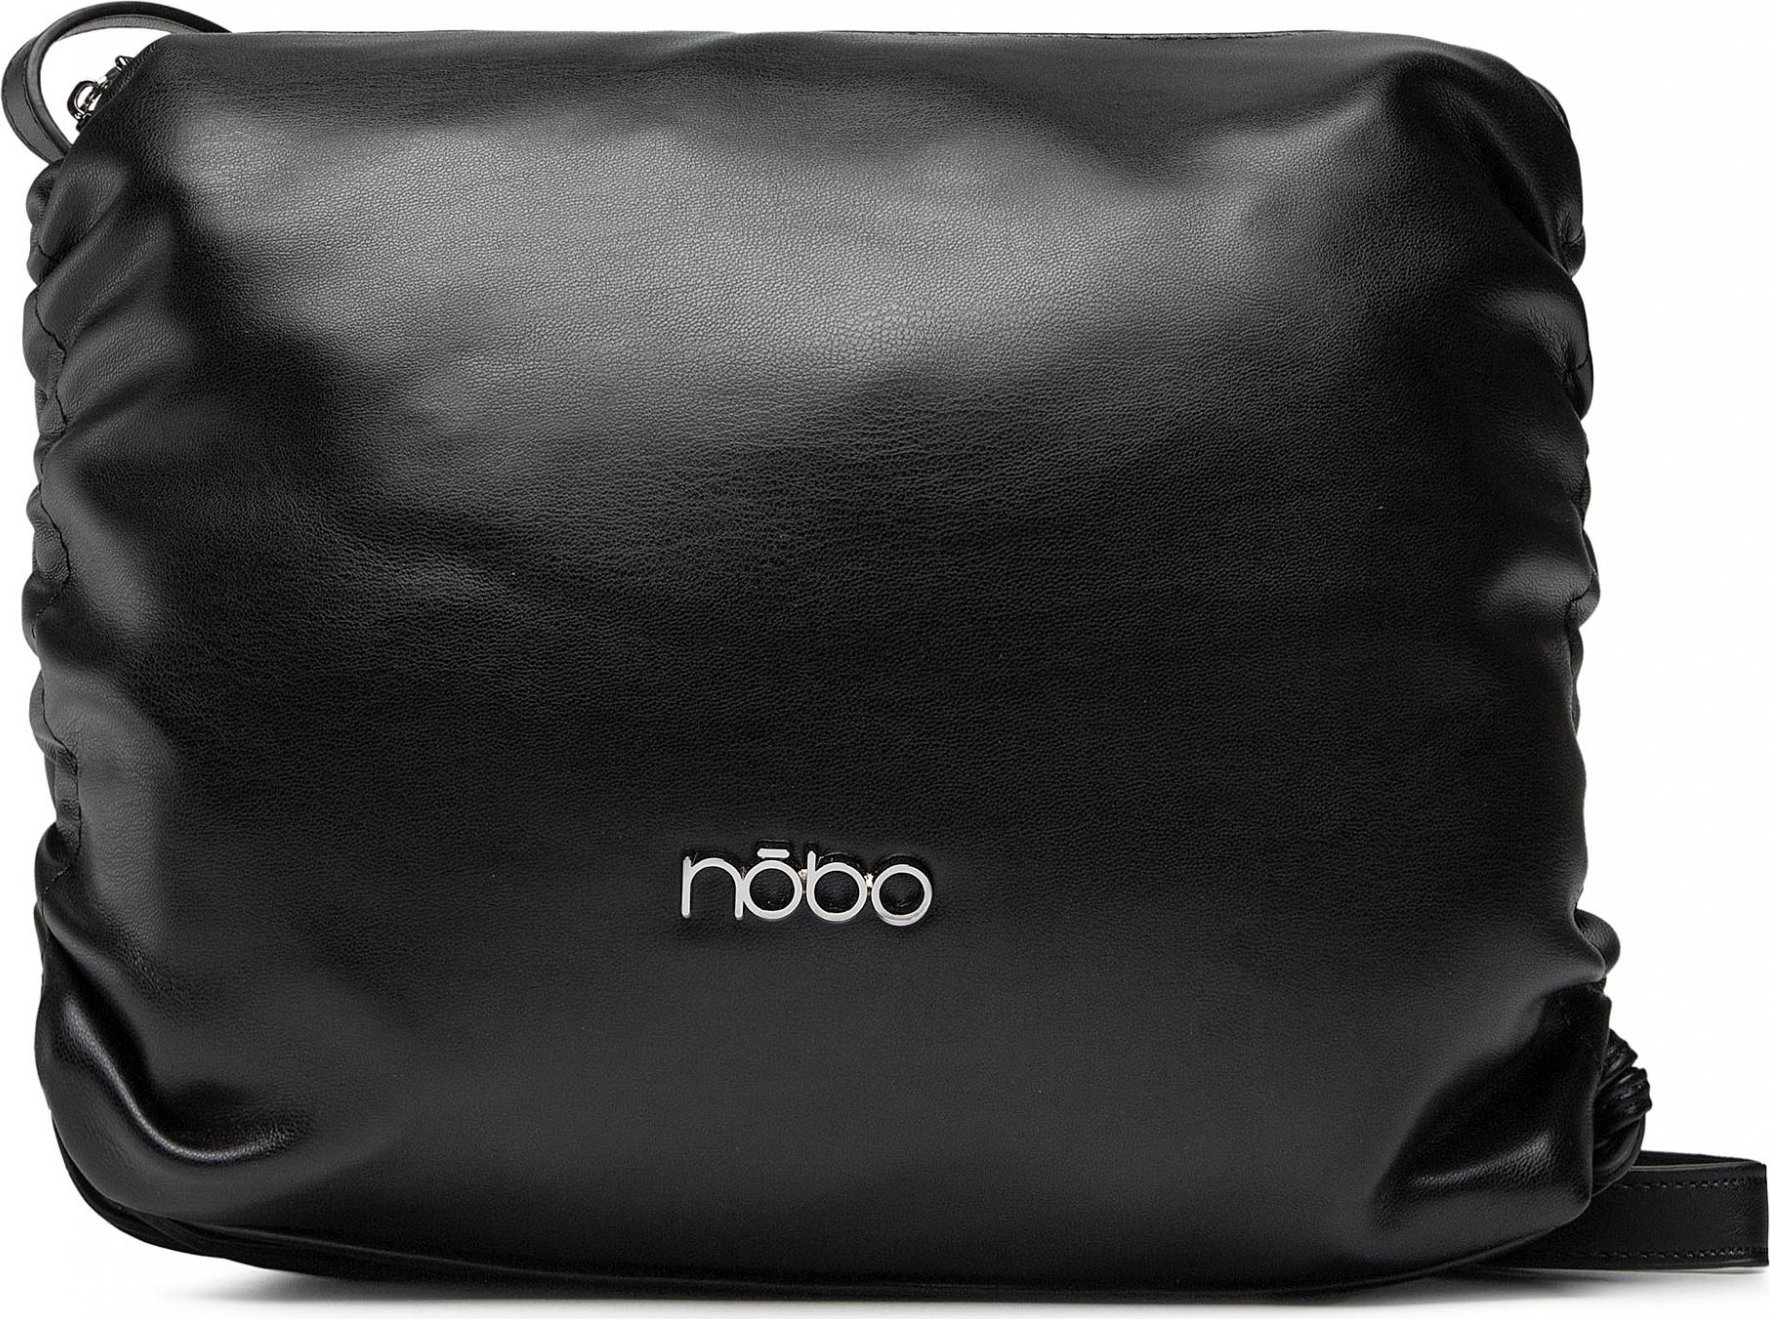 Nobo NBAG-N1520-C020